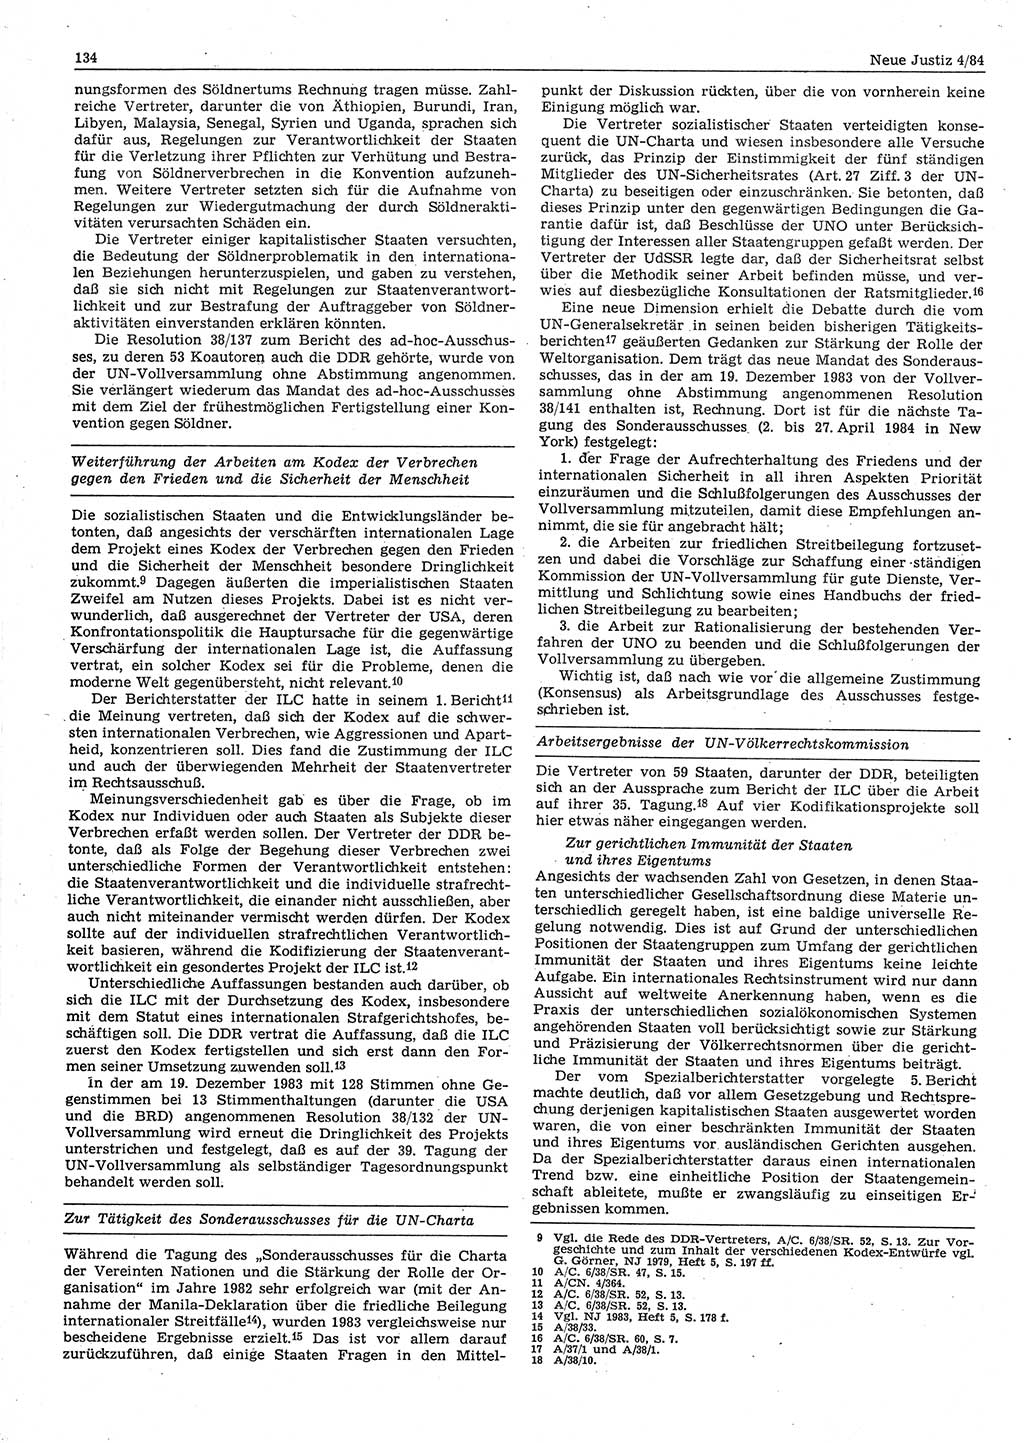 Neue Justiz (NJ), Zeitschrift für sozialistisches Recht und Gesetzlichkeit [Deutsche Demokratische Republik (DDR)], 38. Jahrgang 1984, Seite 134 (NJ DDR 1984, S. 134)